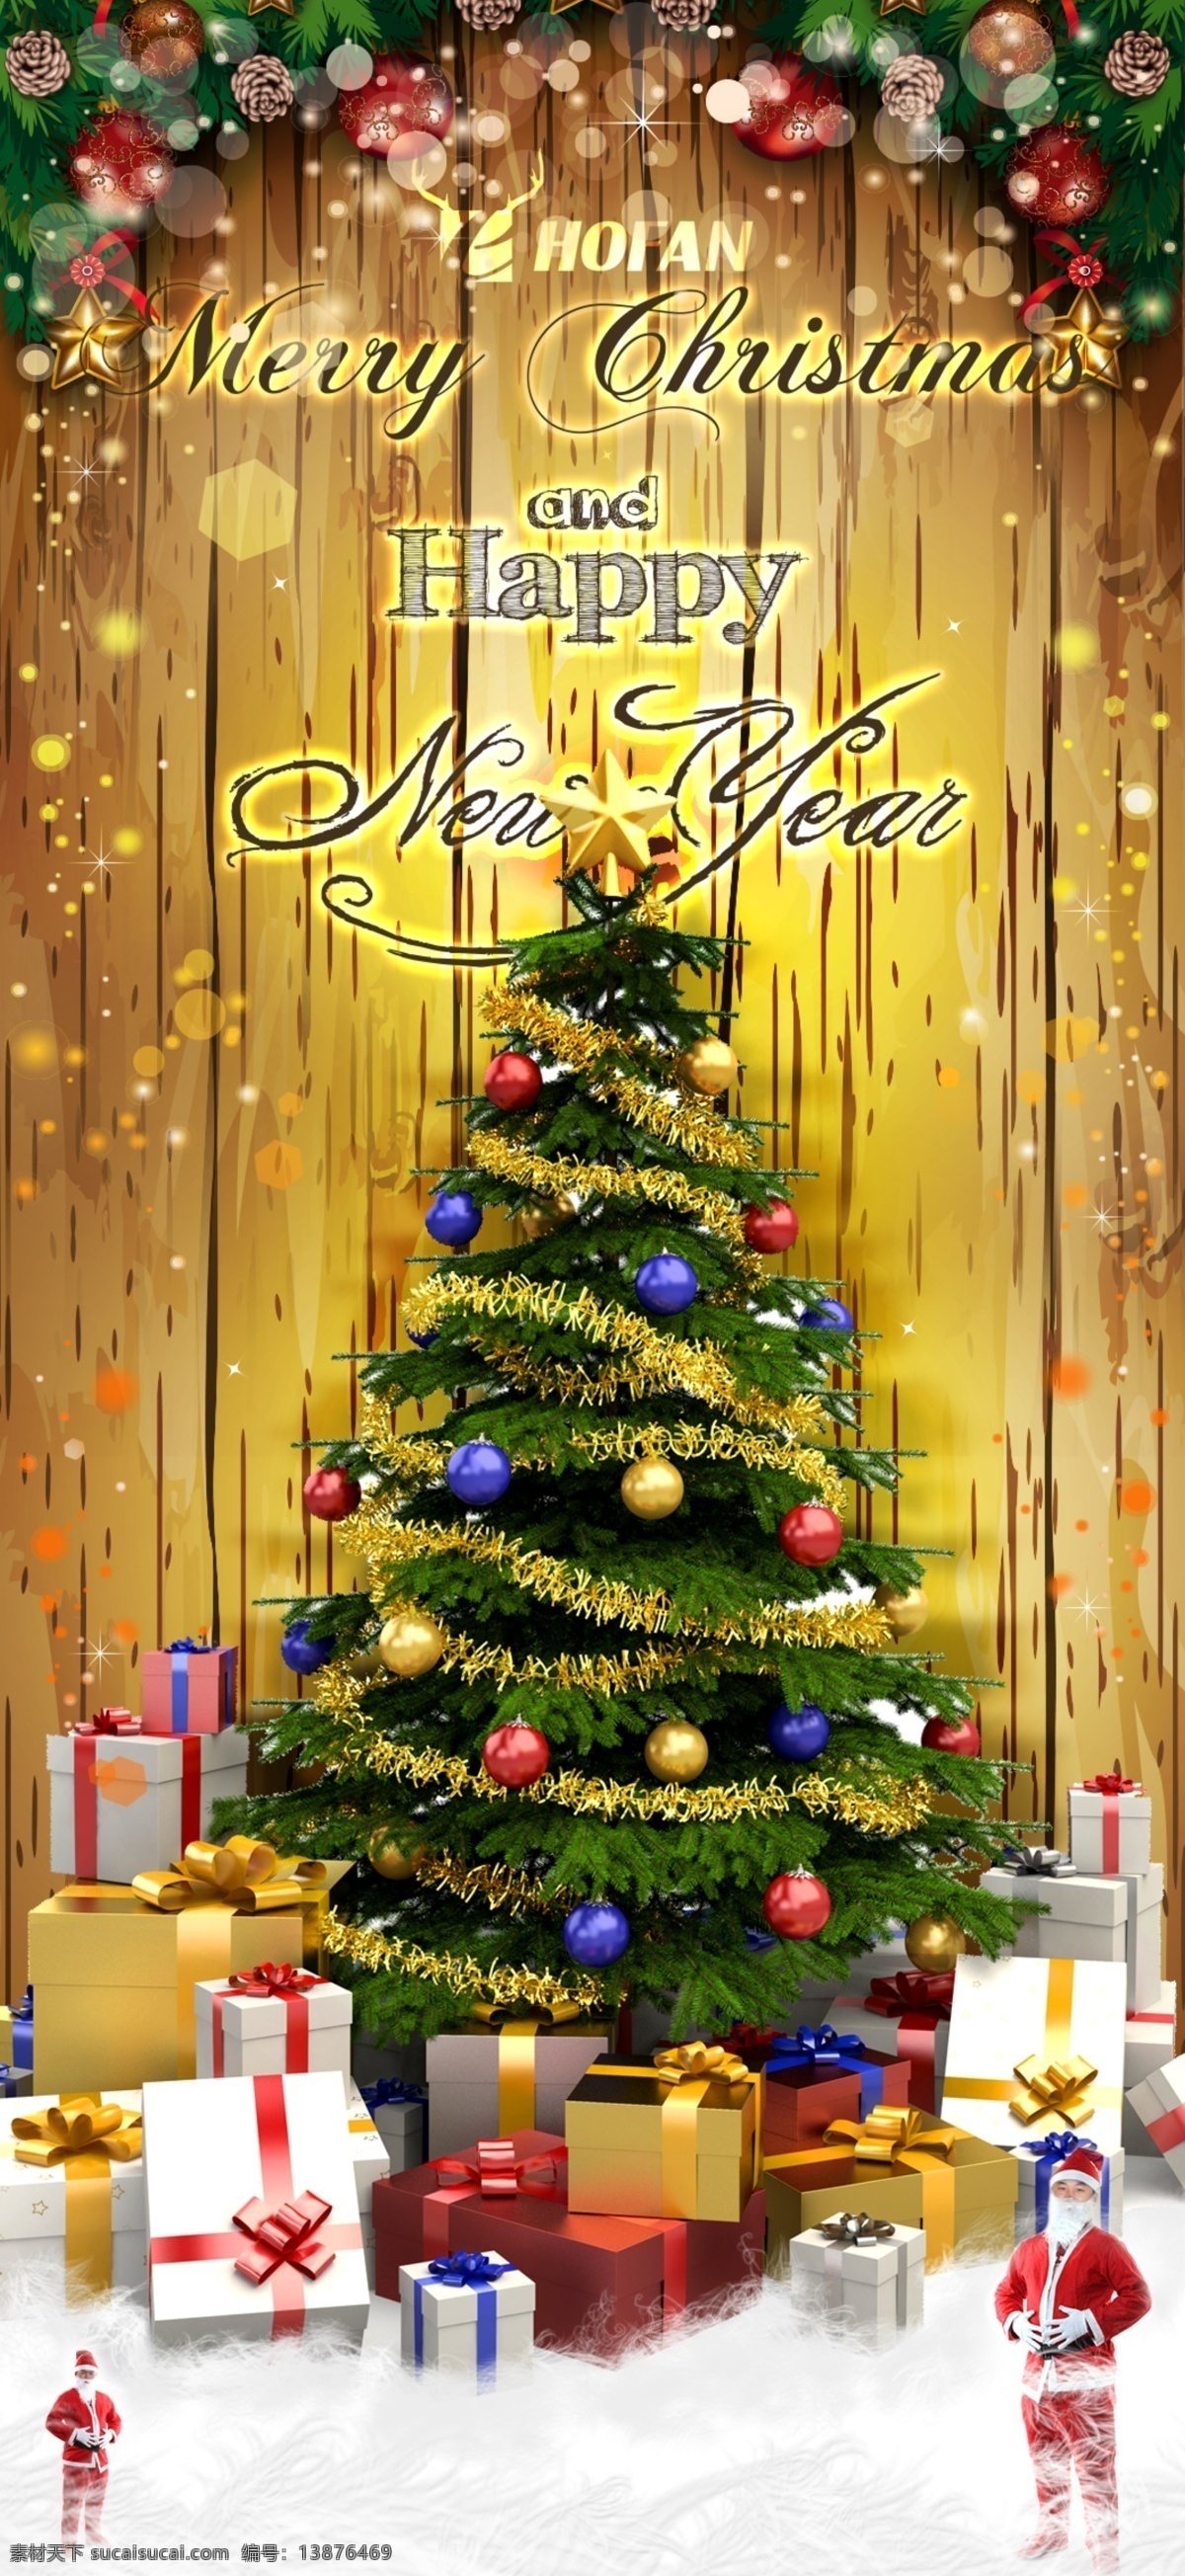 圣诞卡 圣诞老人 圣诞树 圣诞礼物 五角星 merry christmas 黄色背景 响铃 圣诞节 节日素材 源文件